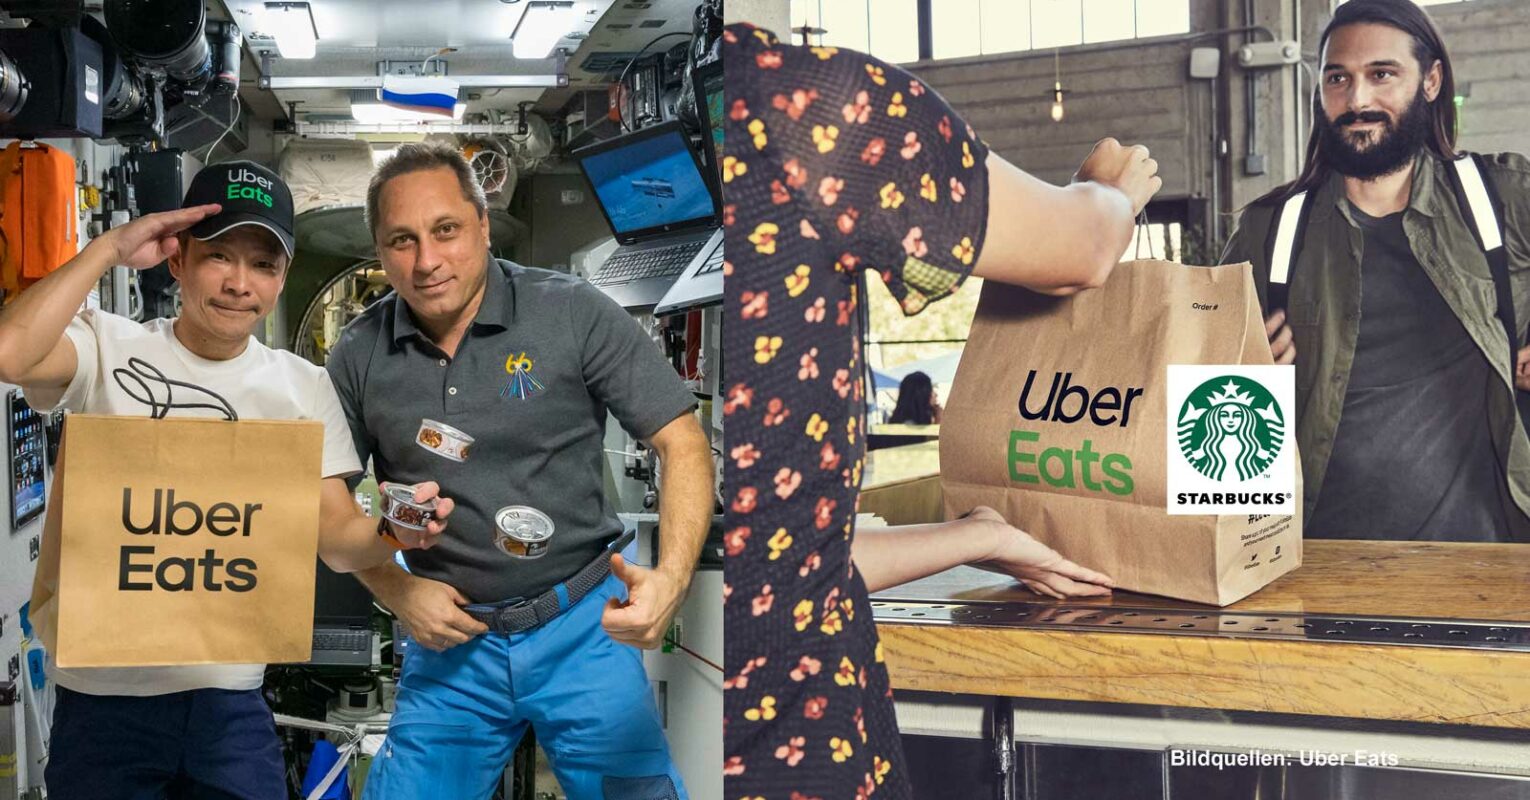 Uber Eats: neue Kooperation und Lieferung ins All